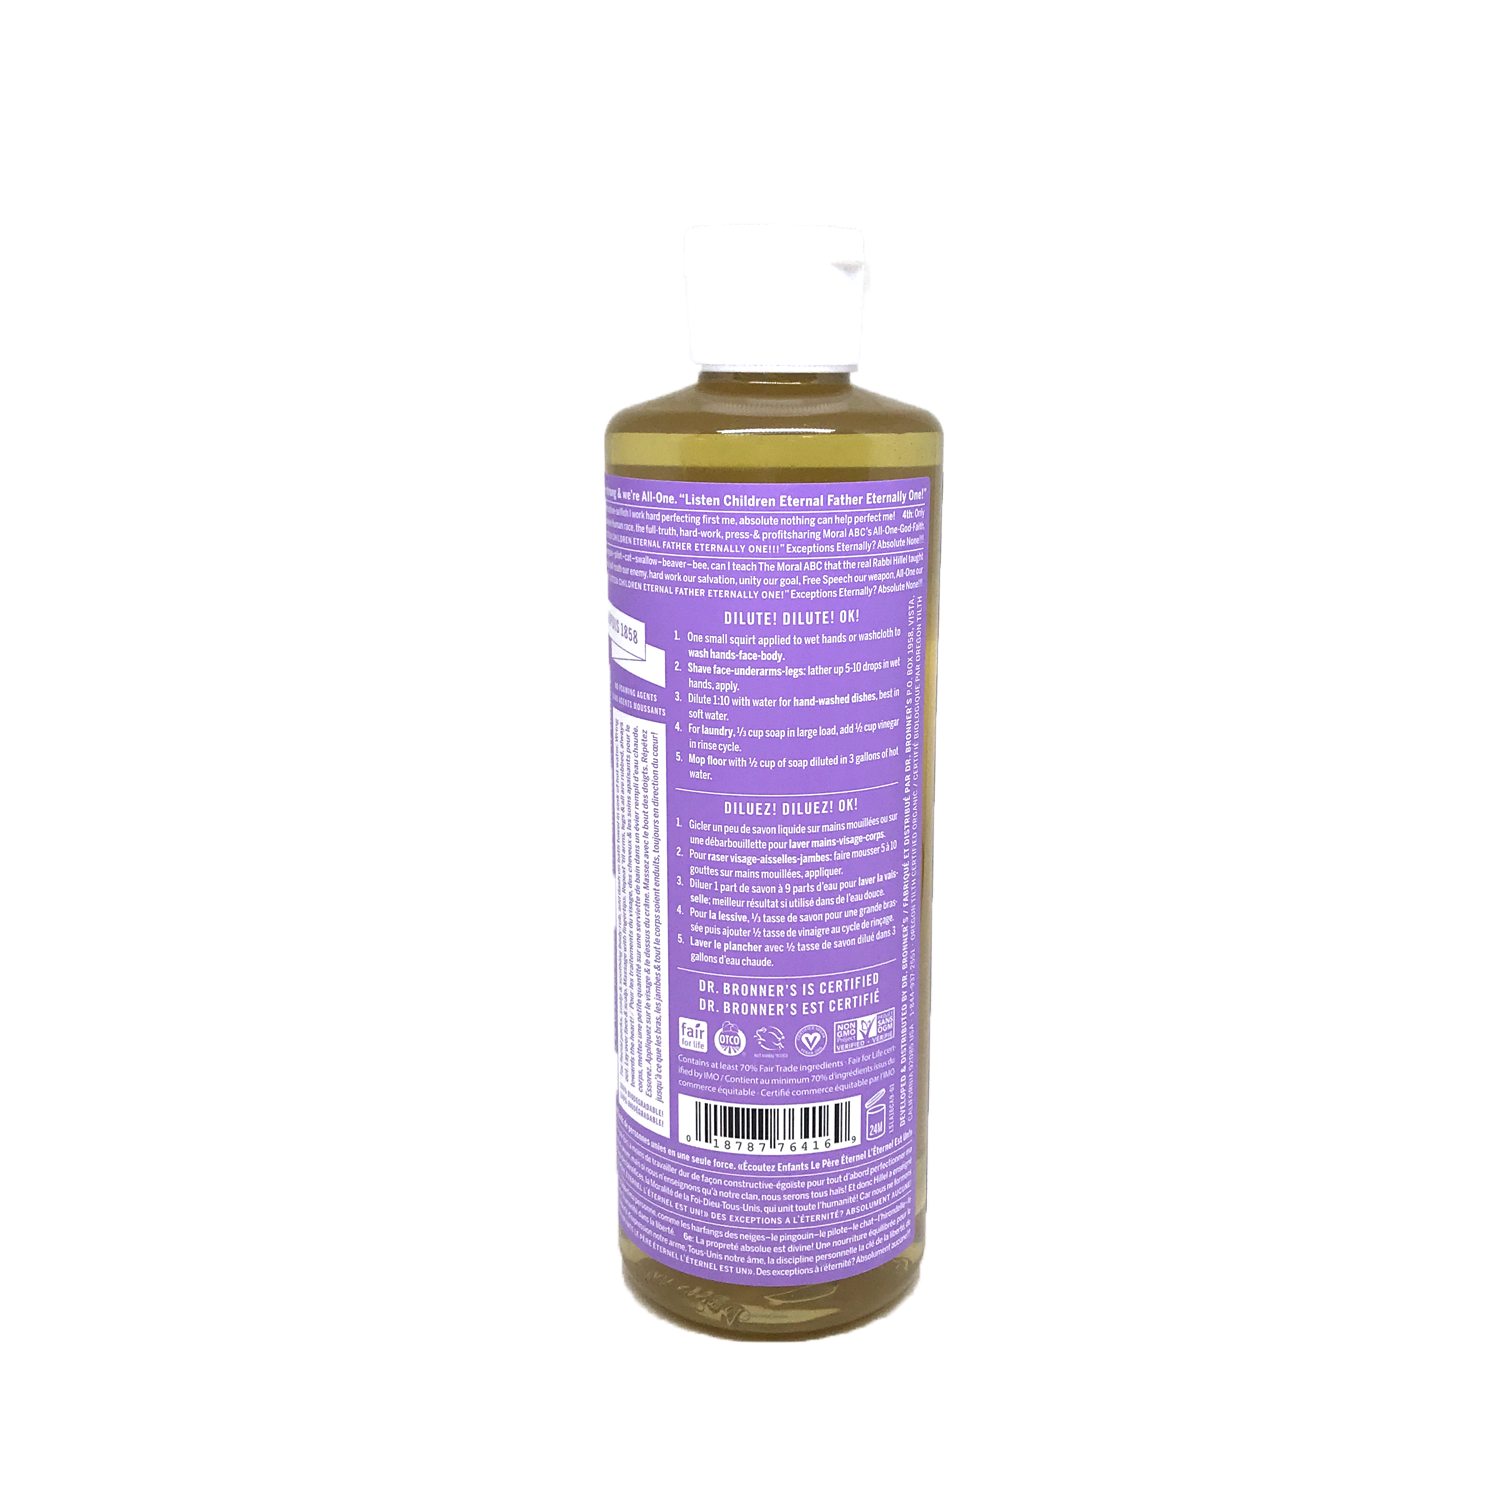 Dr. Bronner’s Organic Lavender Oil Castile Soap 472ml